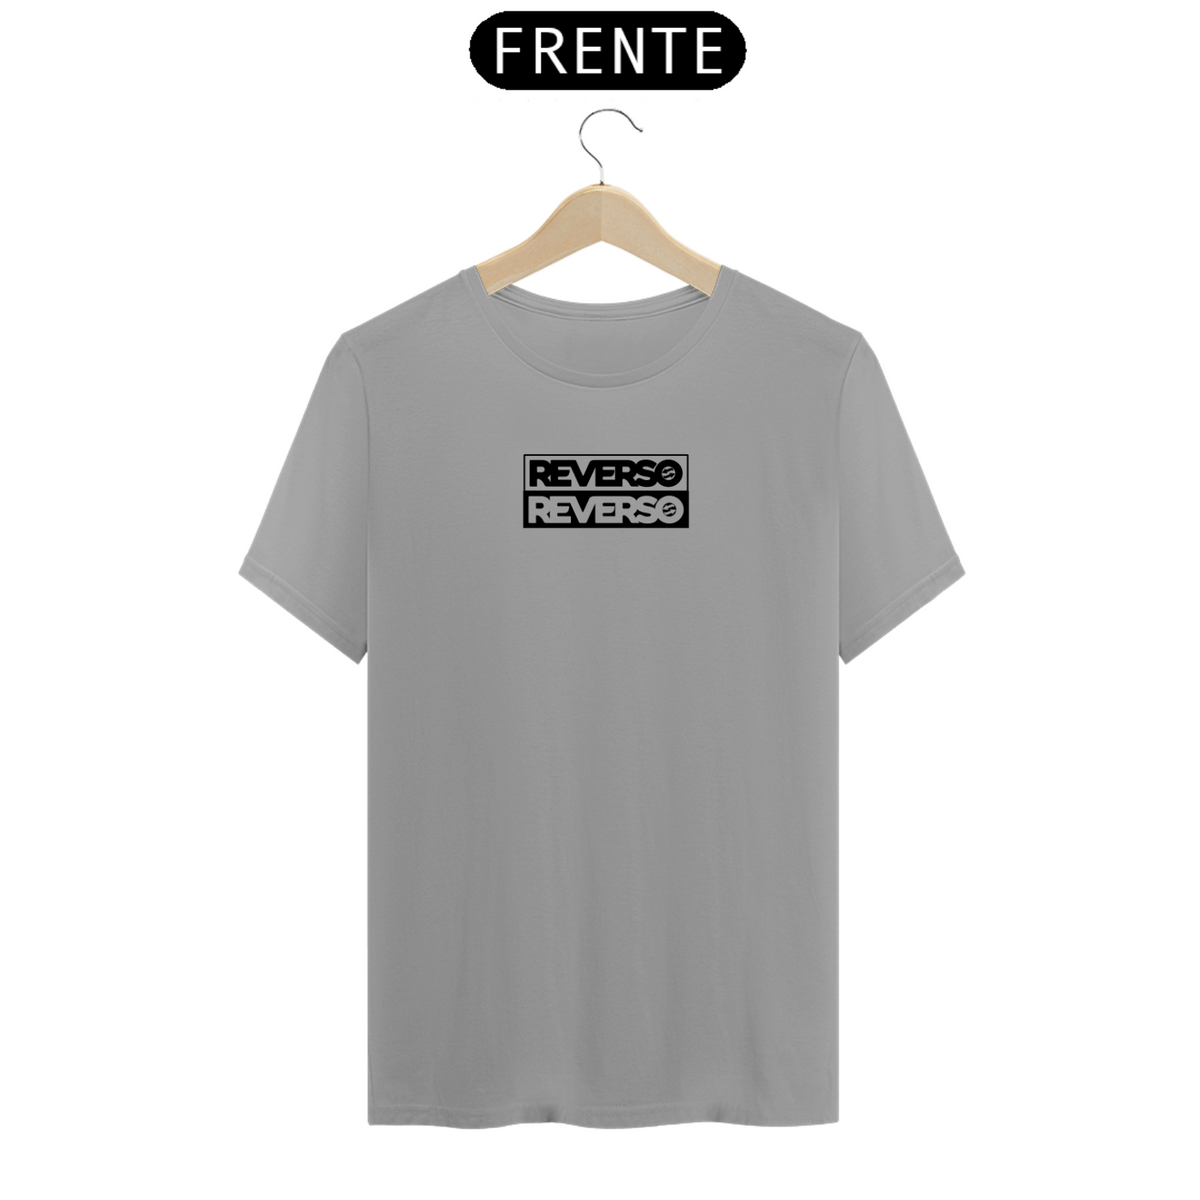 Nome do produto: Camiseta Reverso Duplo Preto